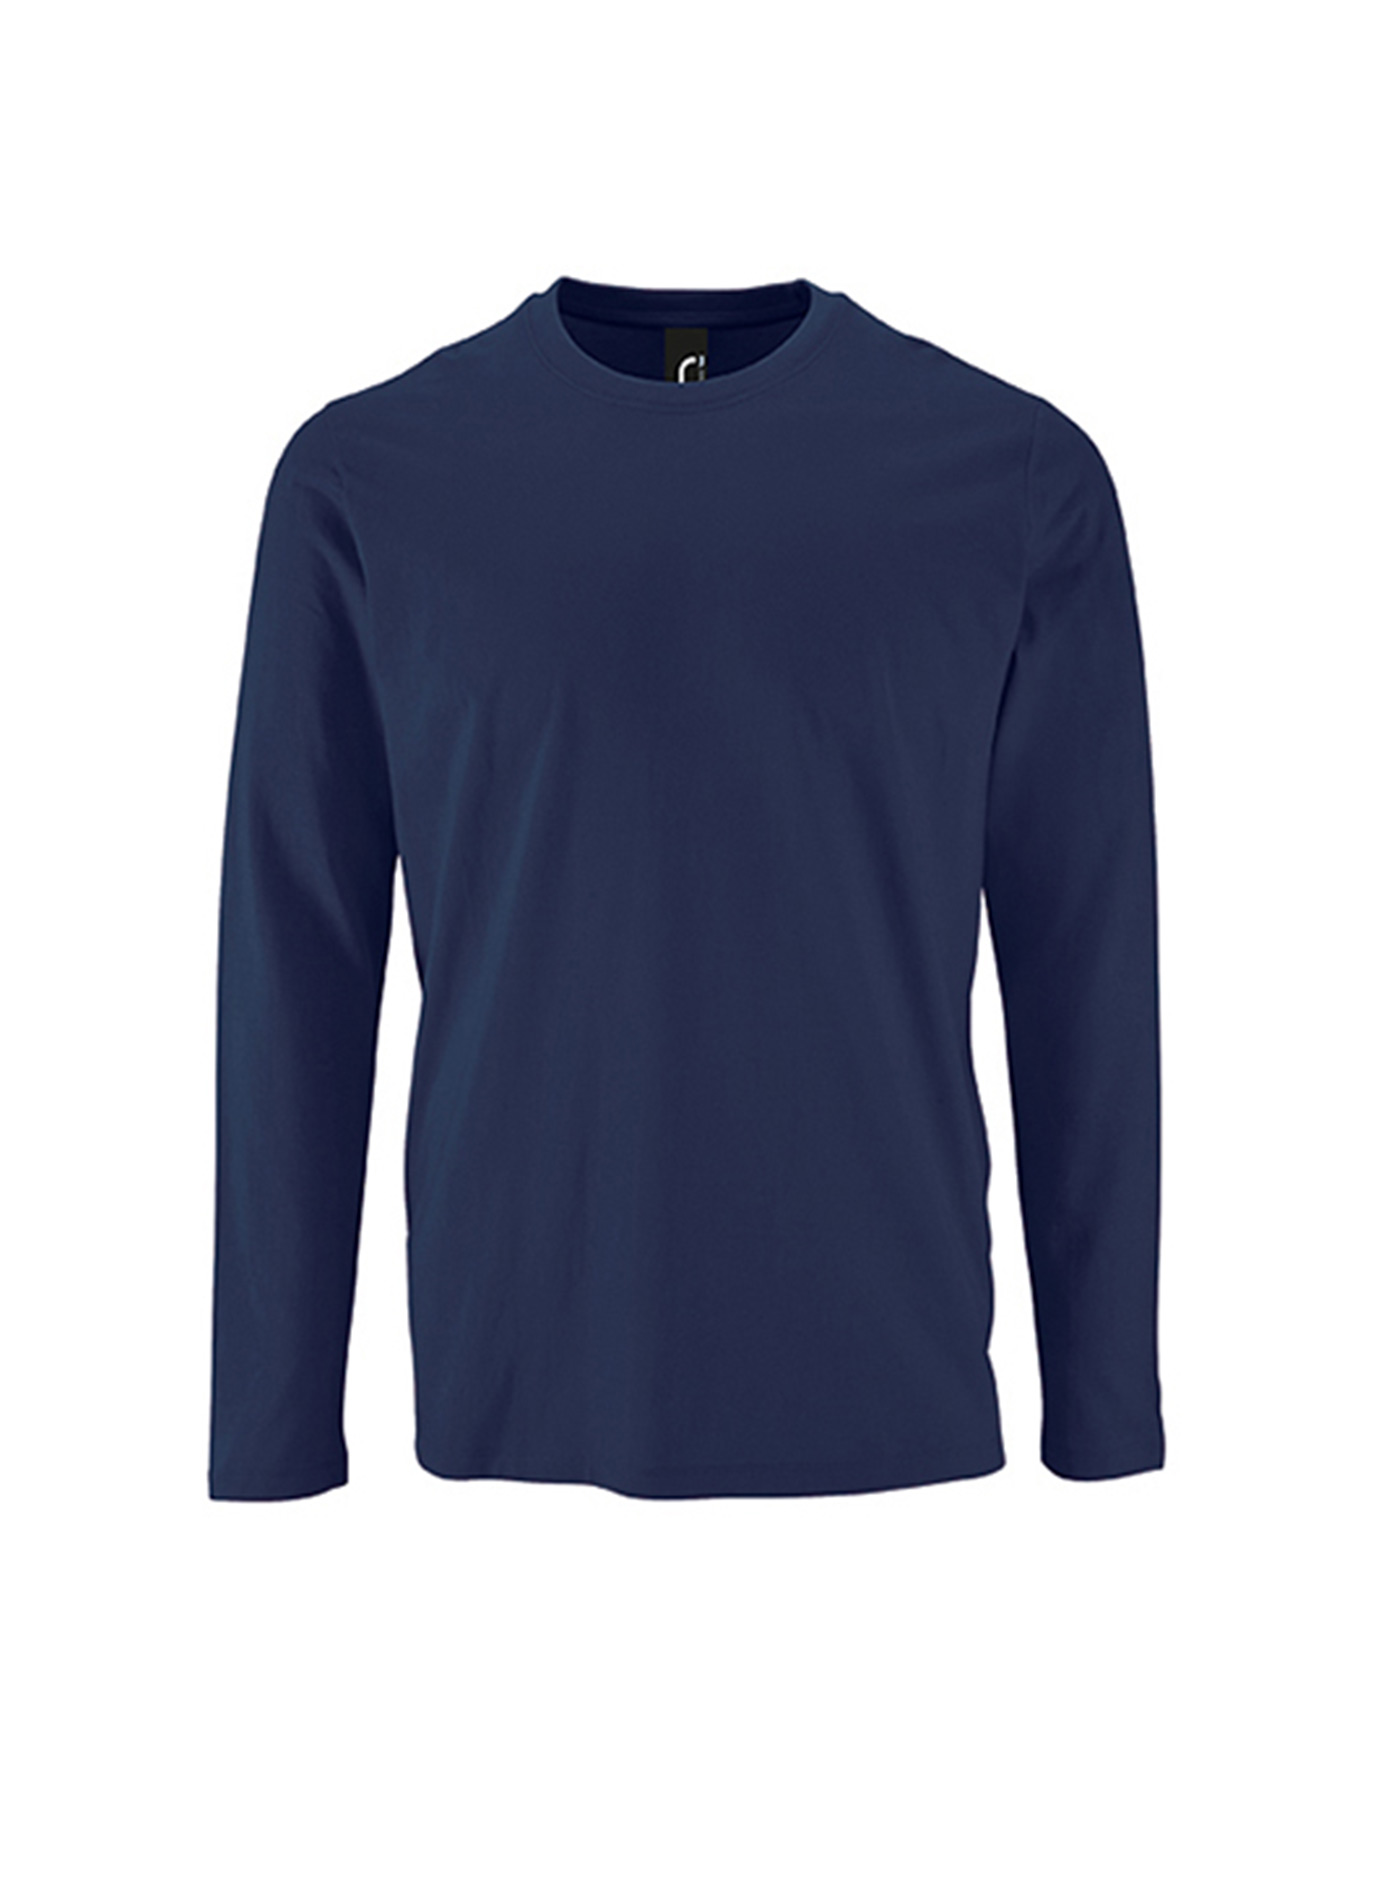 Pánské tričko s dlouhým rukávem SOL´S Imperial - Námořnická modrá L